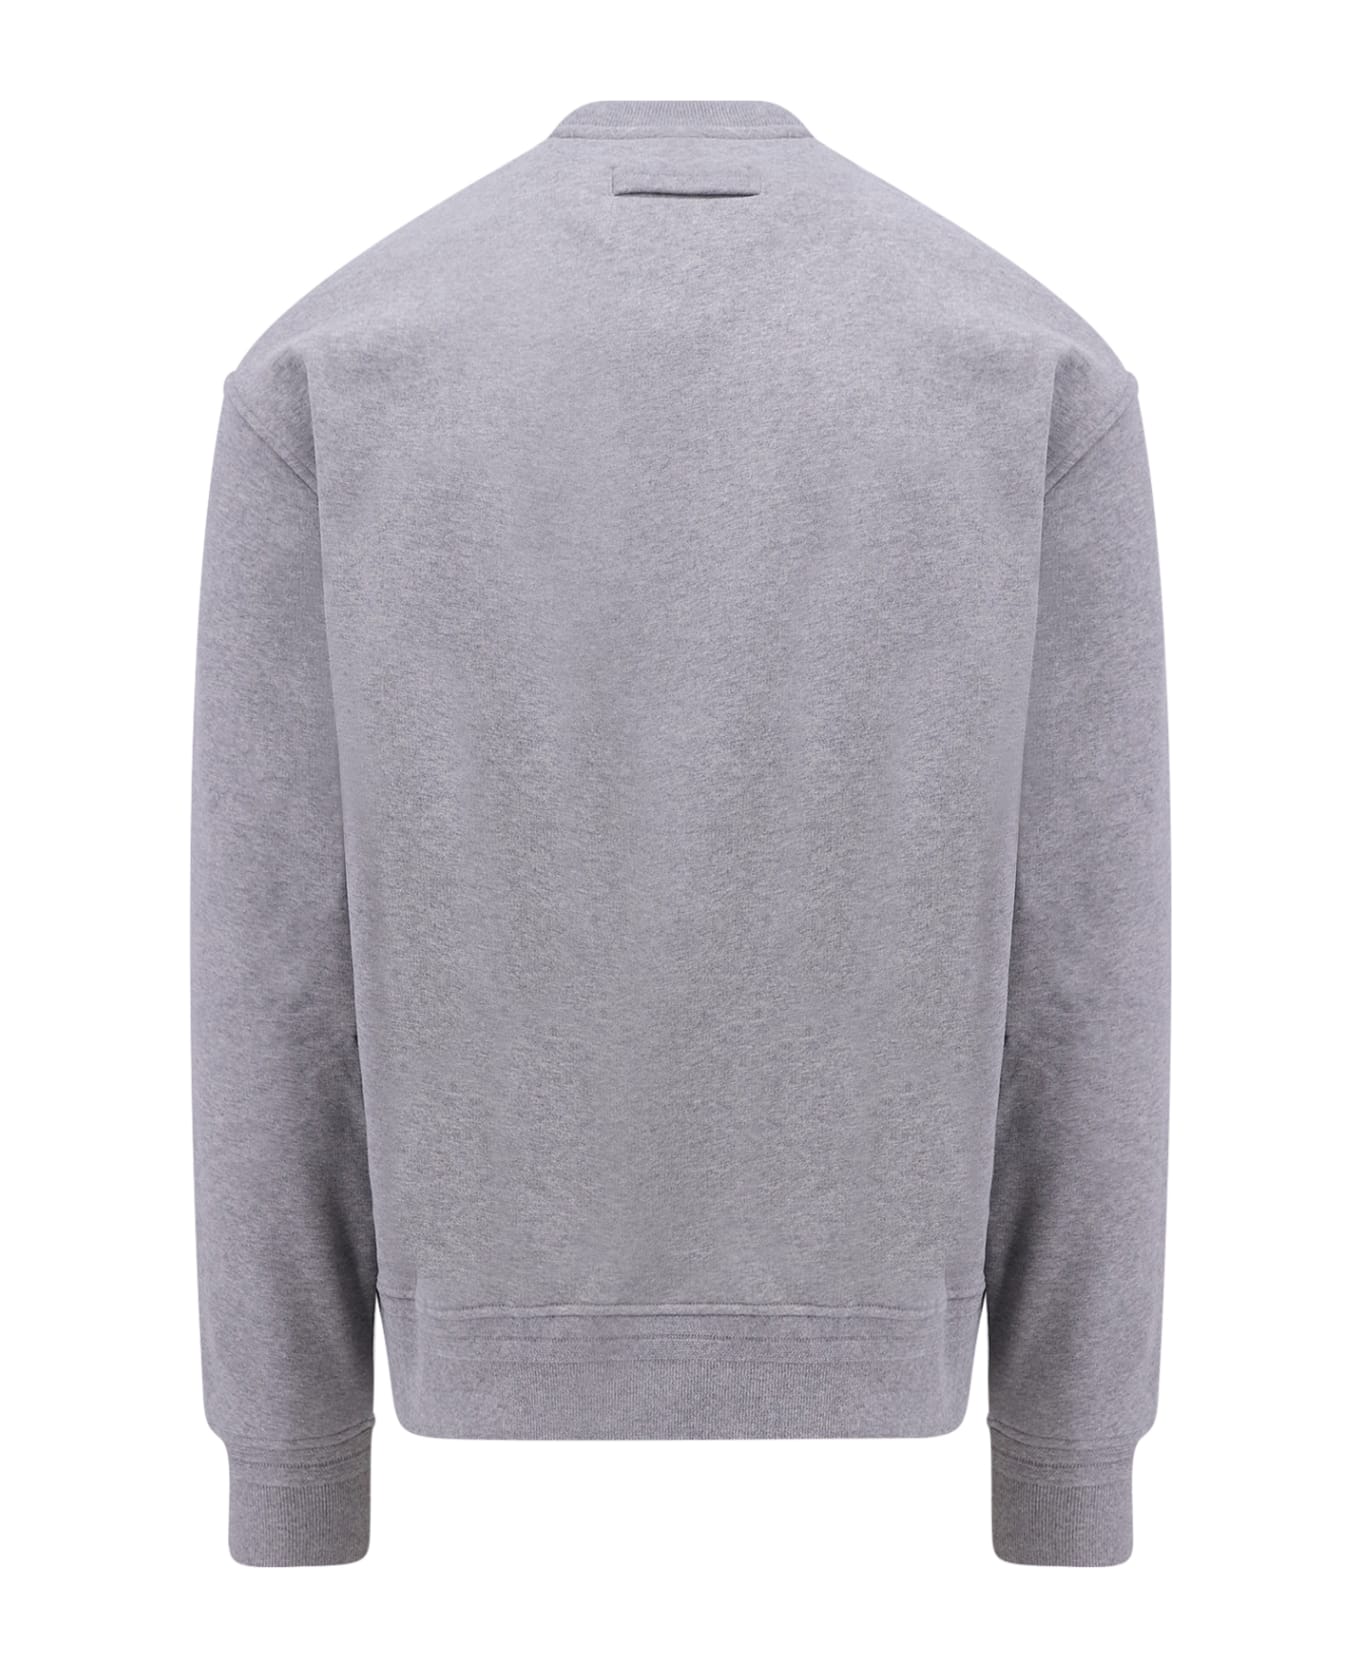 Zegna #usetheexisting Sweatshirt - Grey